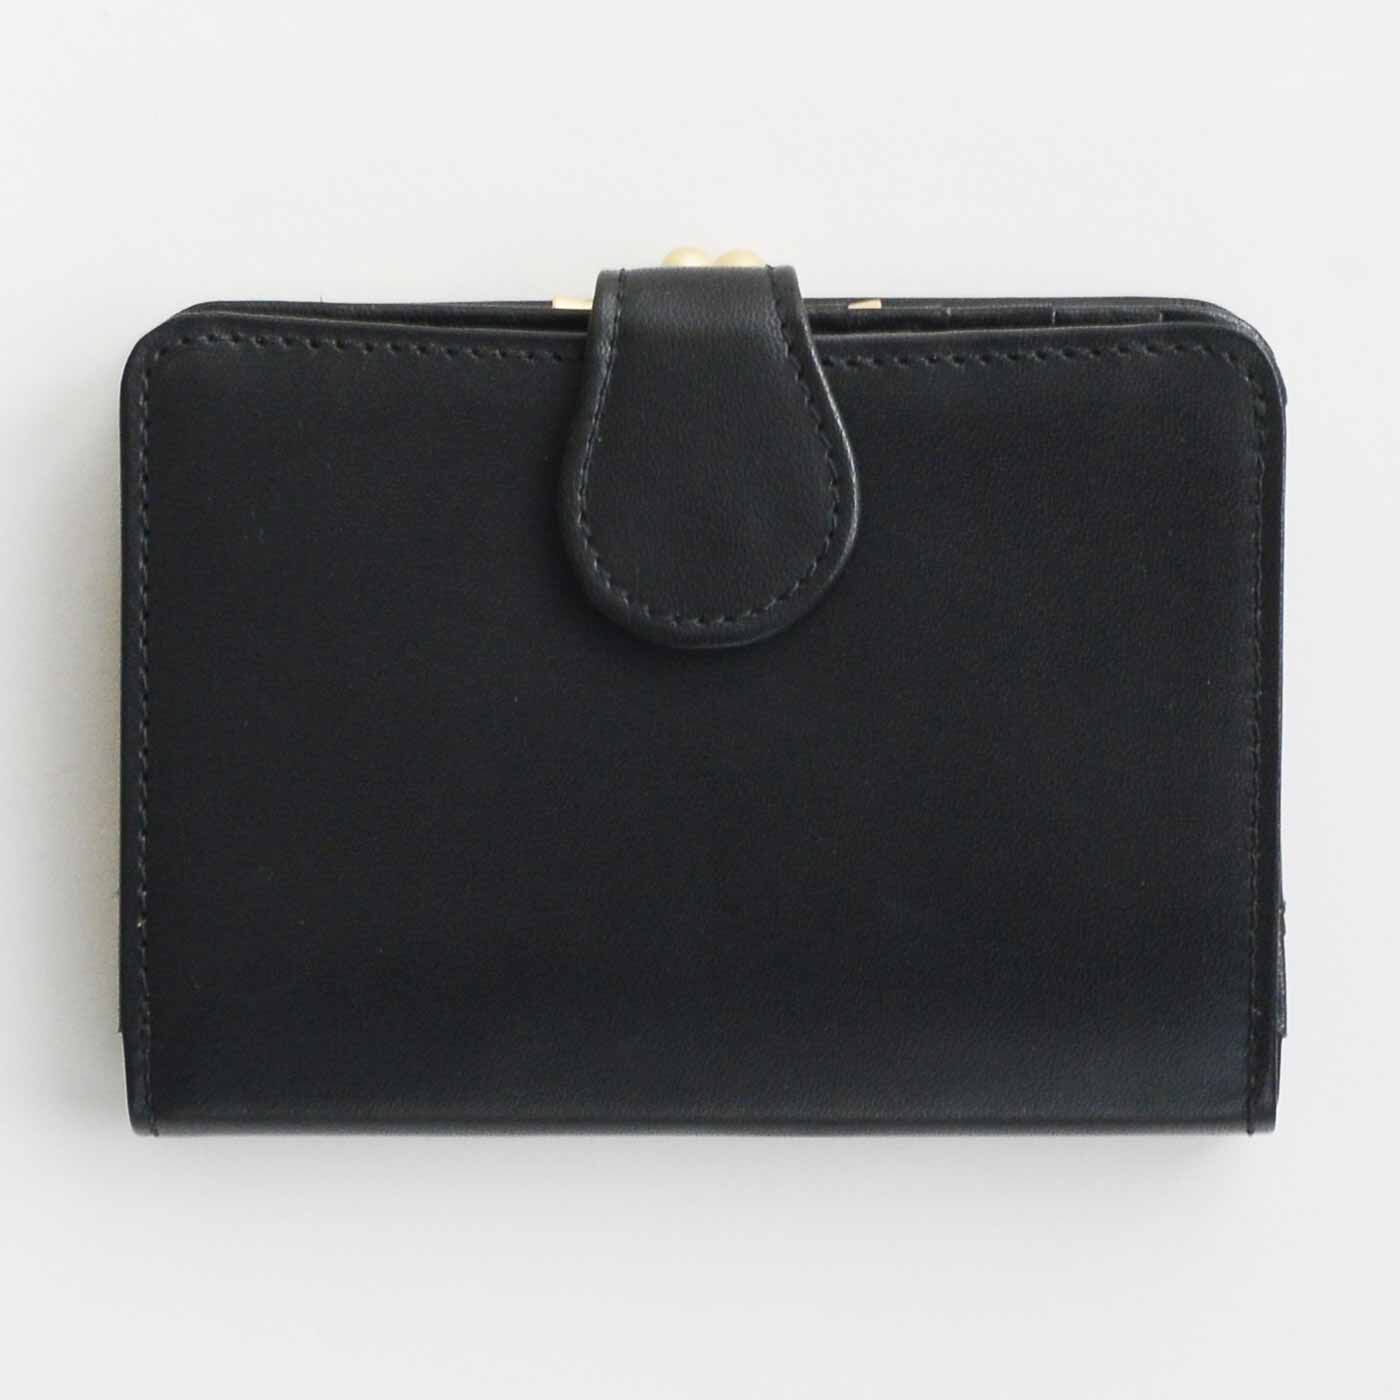 ＆Stories|職人が誂えた 仕草華やぐ 大人の馬革折り財布〈黒鍵色〉[本革 財布：日本製]|手にしっくり収まる、絶妙サイズの折り財布